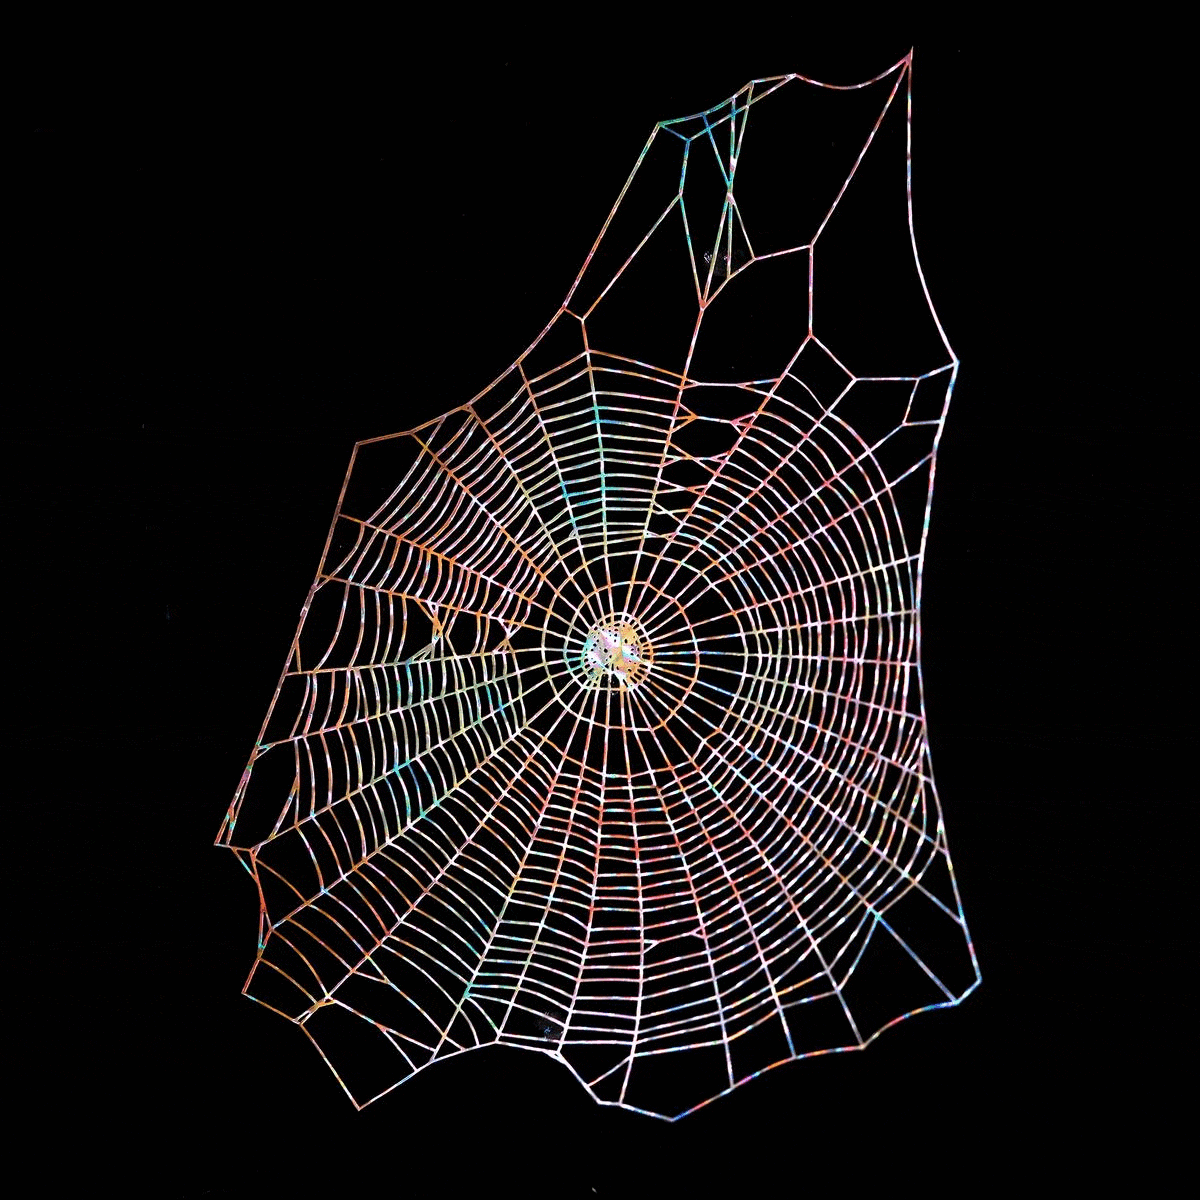 Holographic Spiderweb